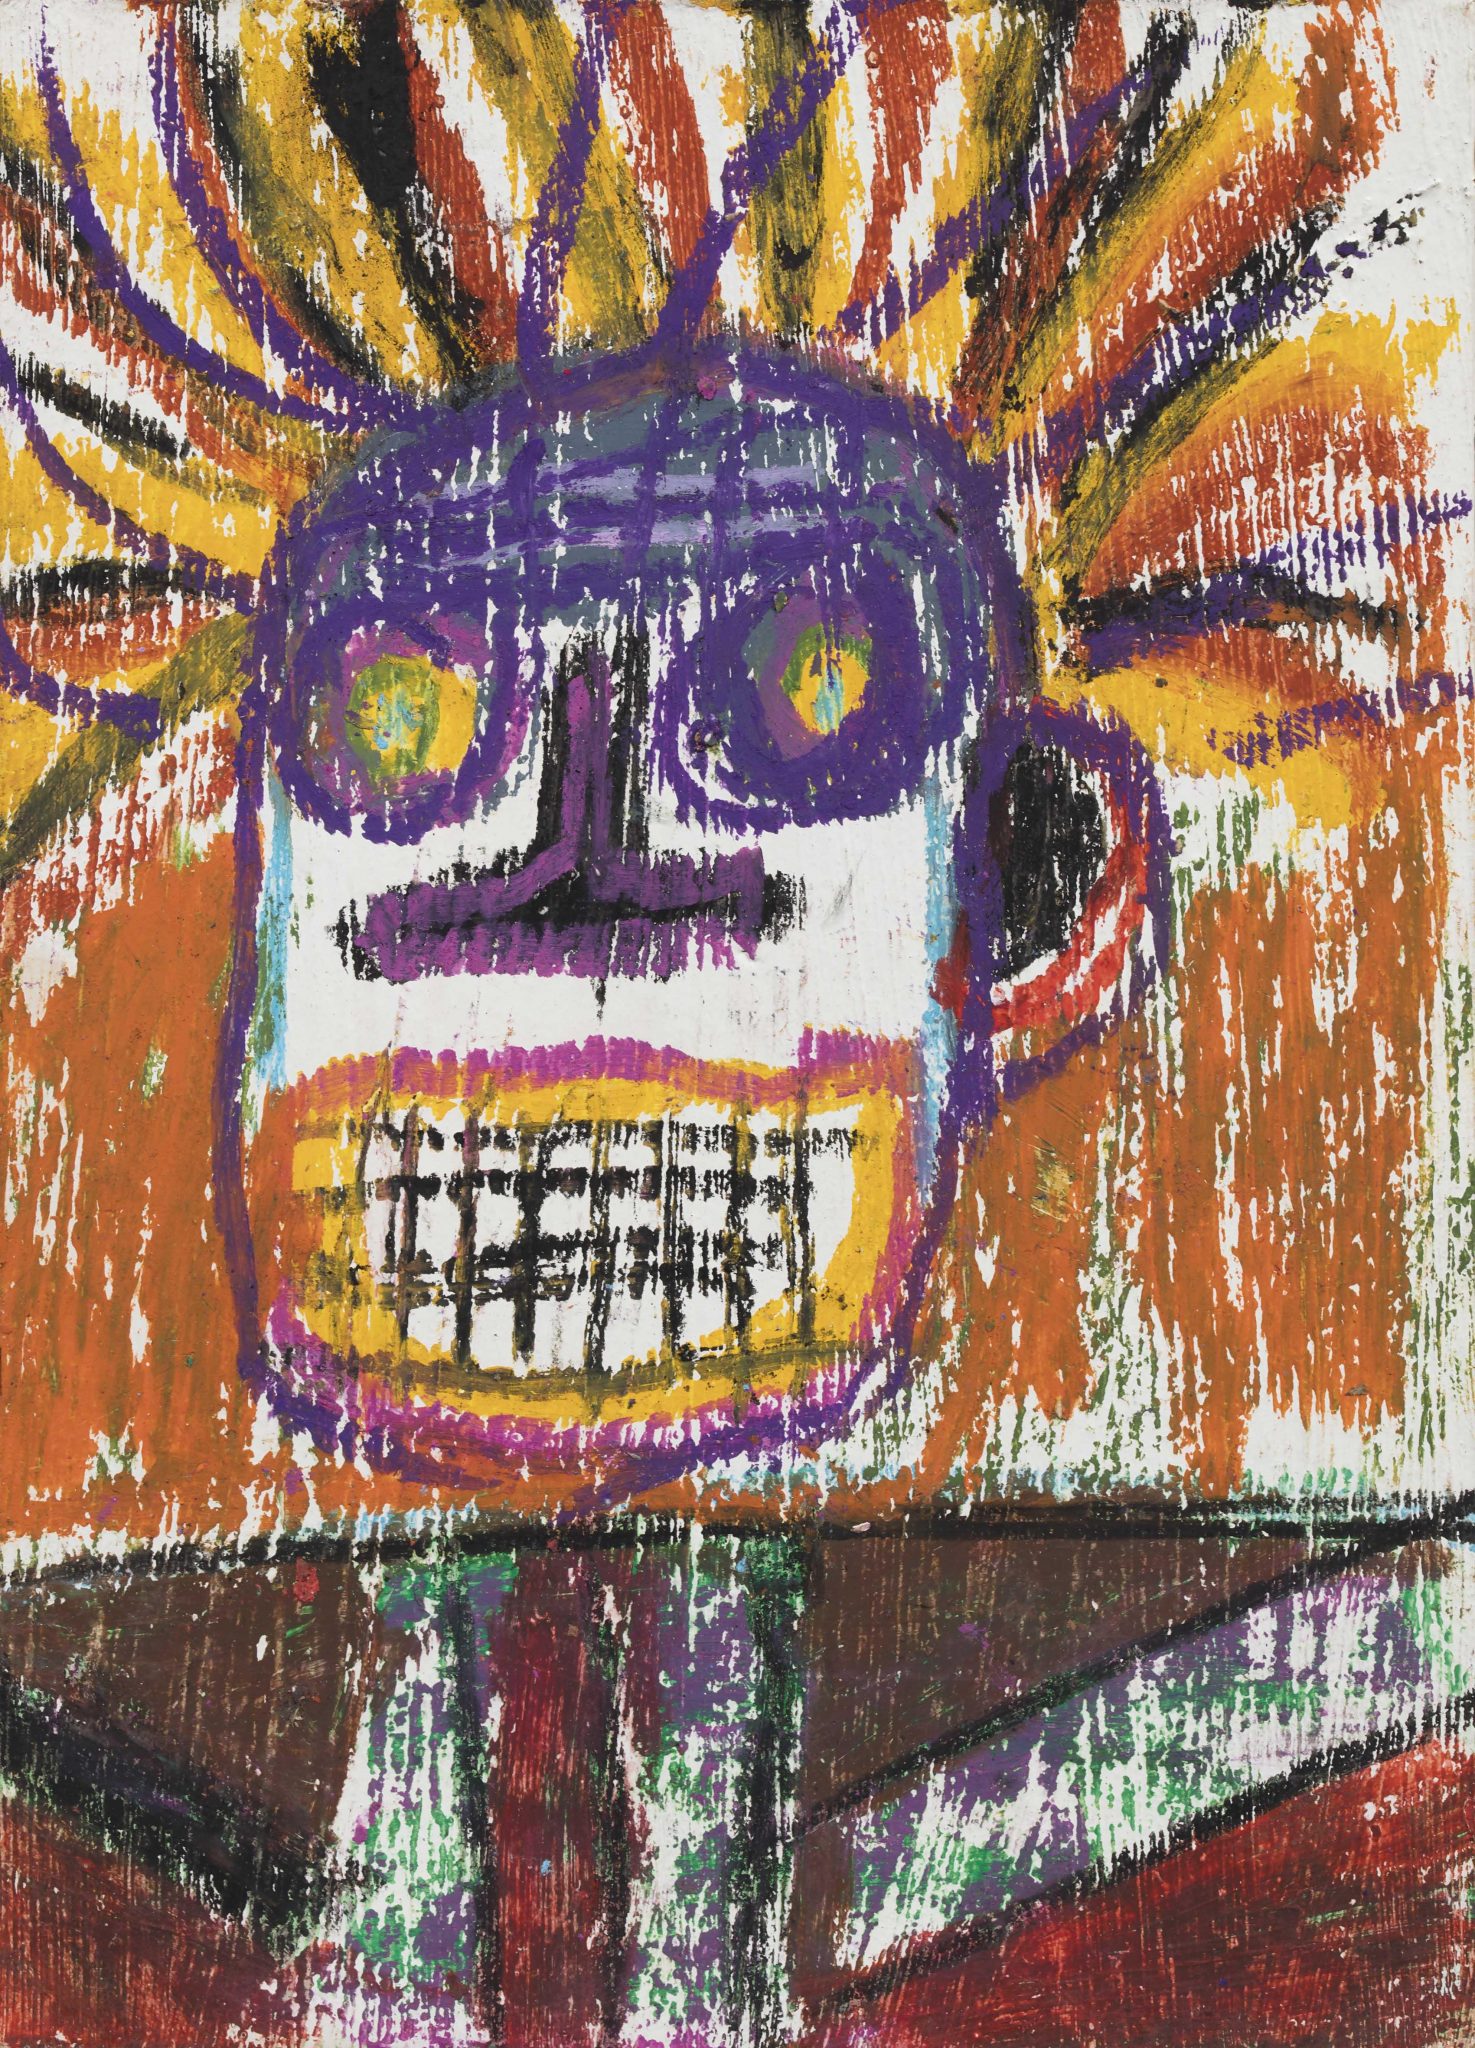 84 JEAN-MICHEL BASQUIAT (New York, USA 1960 - New York, USA 1988) Senza titolo acrilico, olio e pigmenti organici su cartolina, cm 17,78x12,7 sul retro firmato e datato J.M.B 81 eseguito nel 1981 L'opera è accompagnata da autentica rilasciata nel 2000, dal Authentication Committee of the Estate of Jean-Michel Basquiat L'opera è registrata presso l'Authentication Committee of the Estate of Jean-Michel Basquiat, con il numero n. 10871 Provenienza Collezione privata, Usa Collezione privata, Arezzo Nel febbraio del 1981, Jean-Michel Basquiat partecipa alla'esposizione New York /New Wave progettata da Diego Cortez all'Institute for Art and Urban Resources di Long Island. In mostra figurano più di venti artisti tra i quali Keith Haring, Robert Mapplethrope, Kenny Scharf e Andy Warhol, a cui si aggiungono i graffisti Ali, Crash, Dondi, Fab 5 Freddy, Haze, Lady Pink, Seen e Zephyr, Basquiat vi rappresentò una ventina di opere tra disegni e dipinti che rivestono un'intera parete. Il suo lavoro attira in particolare l'attenzione dei mercanti d'arte Emilio Mazzoli, Annina Nosi, e Bruno Bischofberger. In autunno Annina Nosei lo invita a partecipare alla collettiva Public Address, allestita nella sua galleria di New York, ne diventerà la gallerista di riferimento mettendolgi a disposizione il seminterrato della galleria, che diventerà lo studio di Basquiat. Questa mostra e' il trampolino di lancio che introduce ufficialmente Basquait nel mondo dell'arte, affermando Basquiat come degno erede di CY Twombly e Jean Dubuffet, avendo assorbito e accostato nelle proprie opere l'eleganza di Twombly ed il primitivismo di Dubuffet. Stima € 20.000 / 40.000